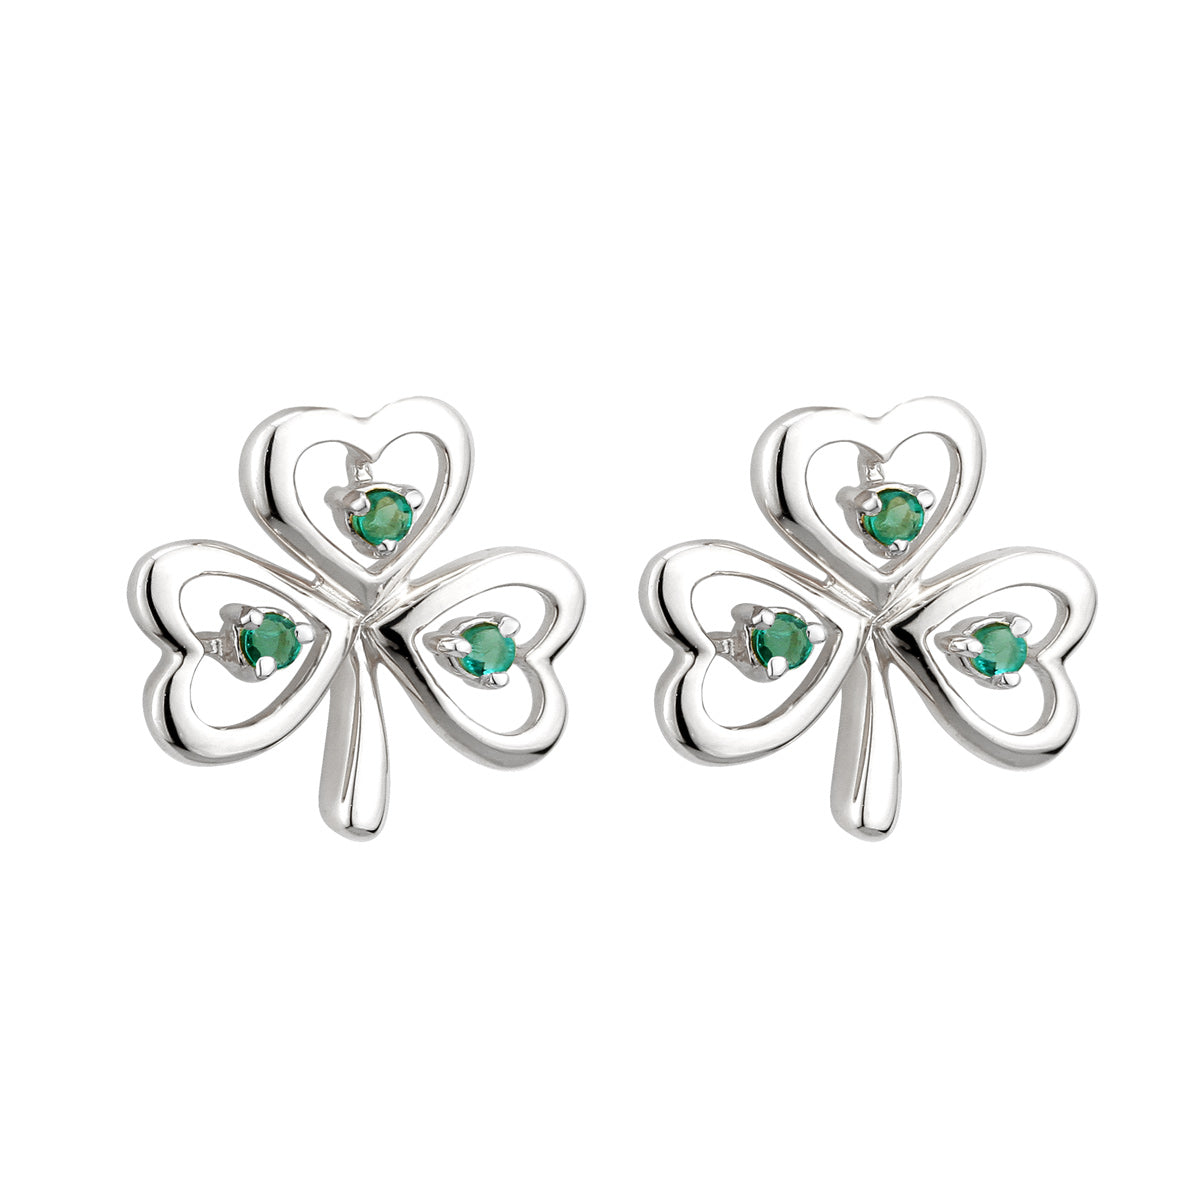 14K white gold emerald shamrock earrings s33485 from Solvar